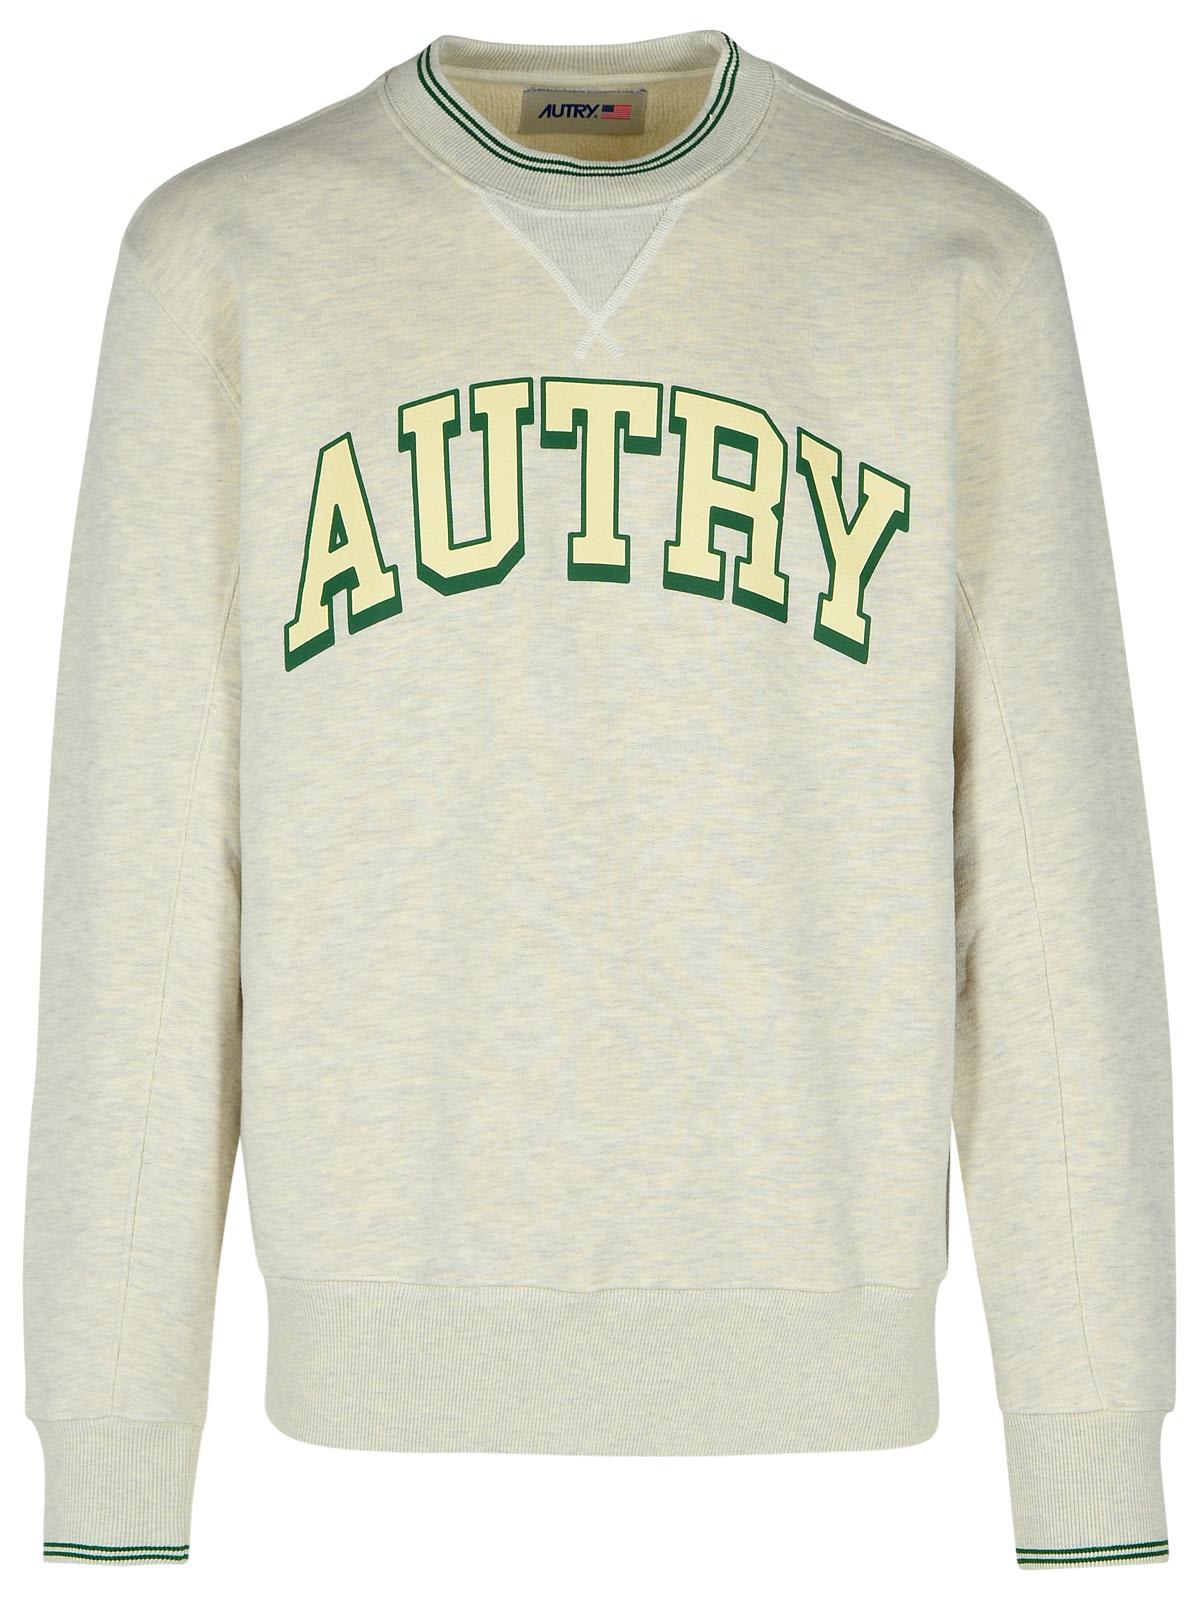 Autry Grey Cotton Blend Sweatshirt